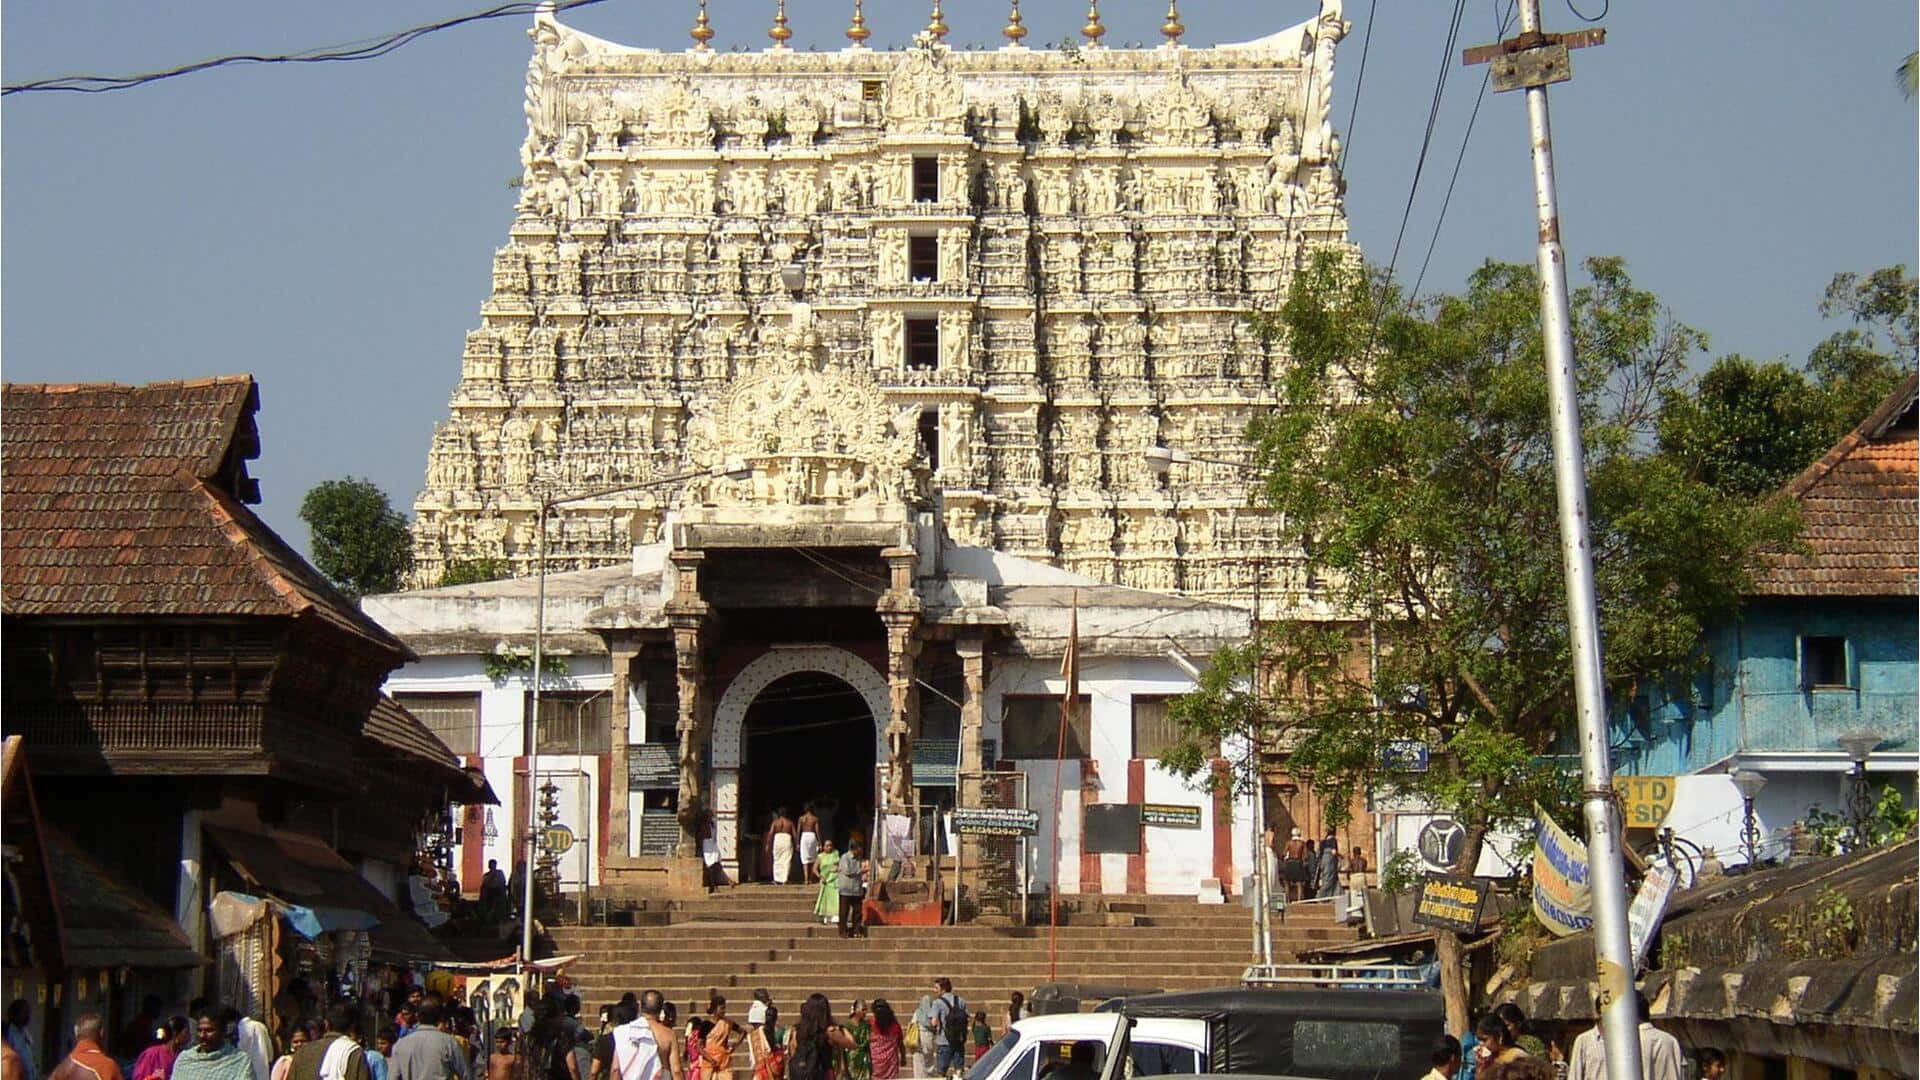 केरल की राजधानी तिरुवनंतपुरम में स्थित हैं ये खूबसूरत पर्यटन स्थल, छुट्टियों में घूम आएं 